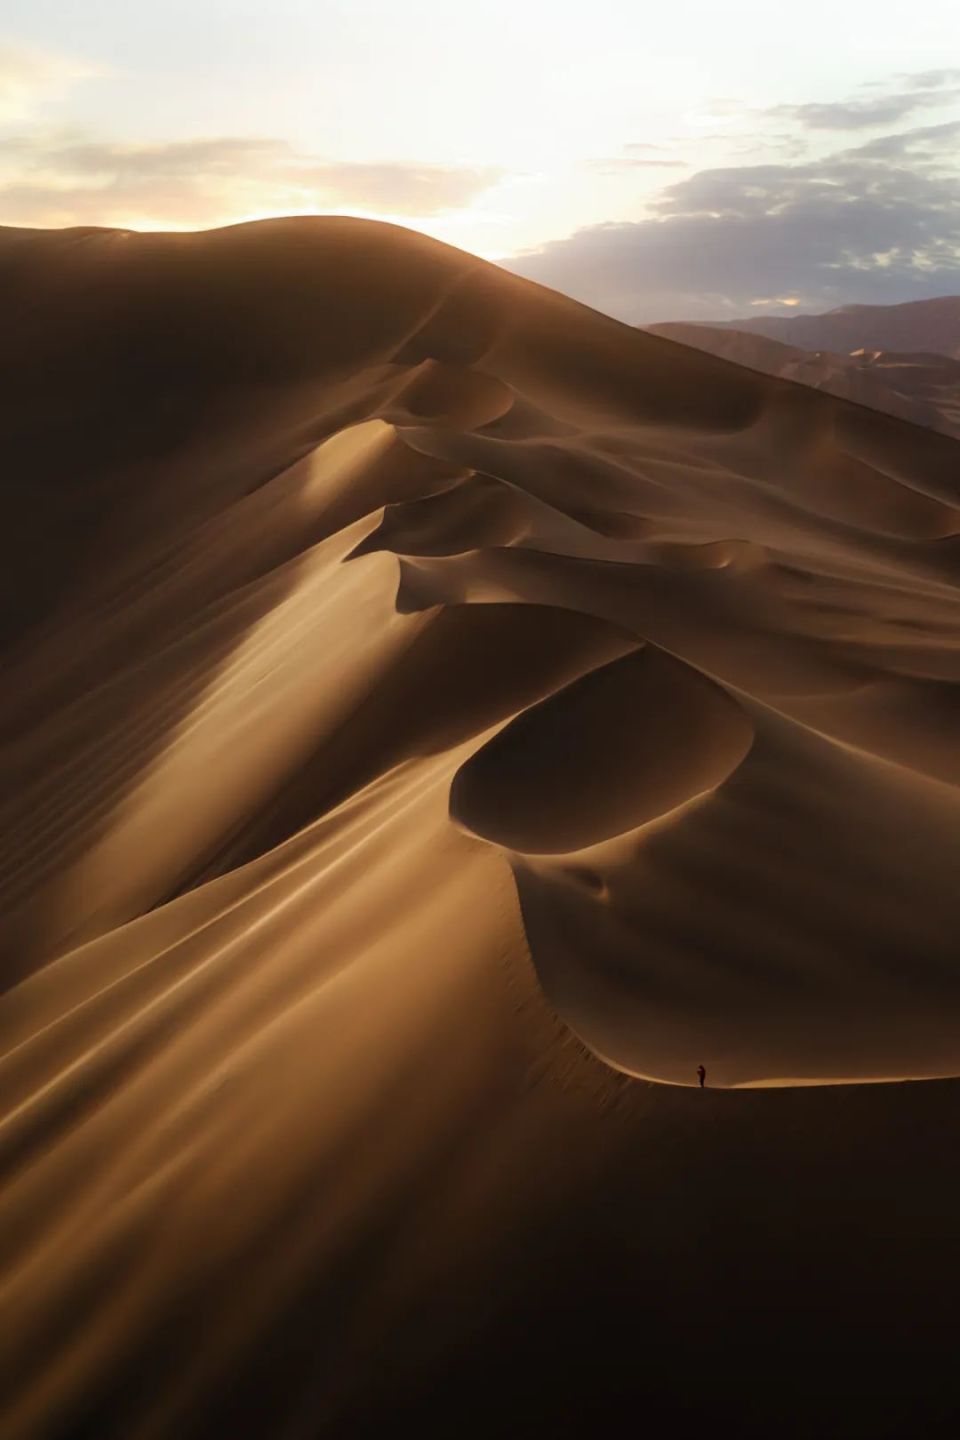 正是因此奇观,这里被《中国国家地理》评选为中国最美沙漠